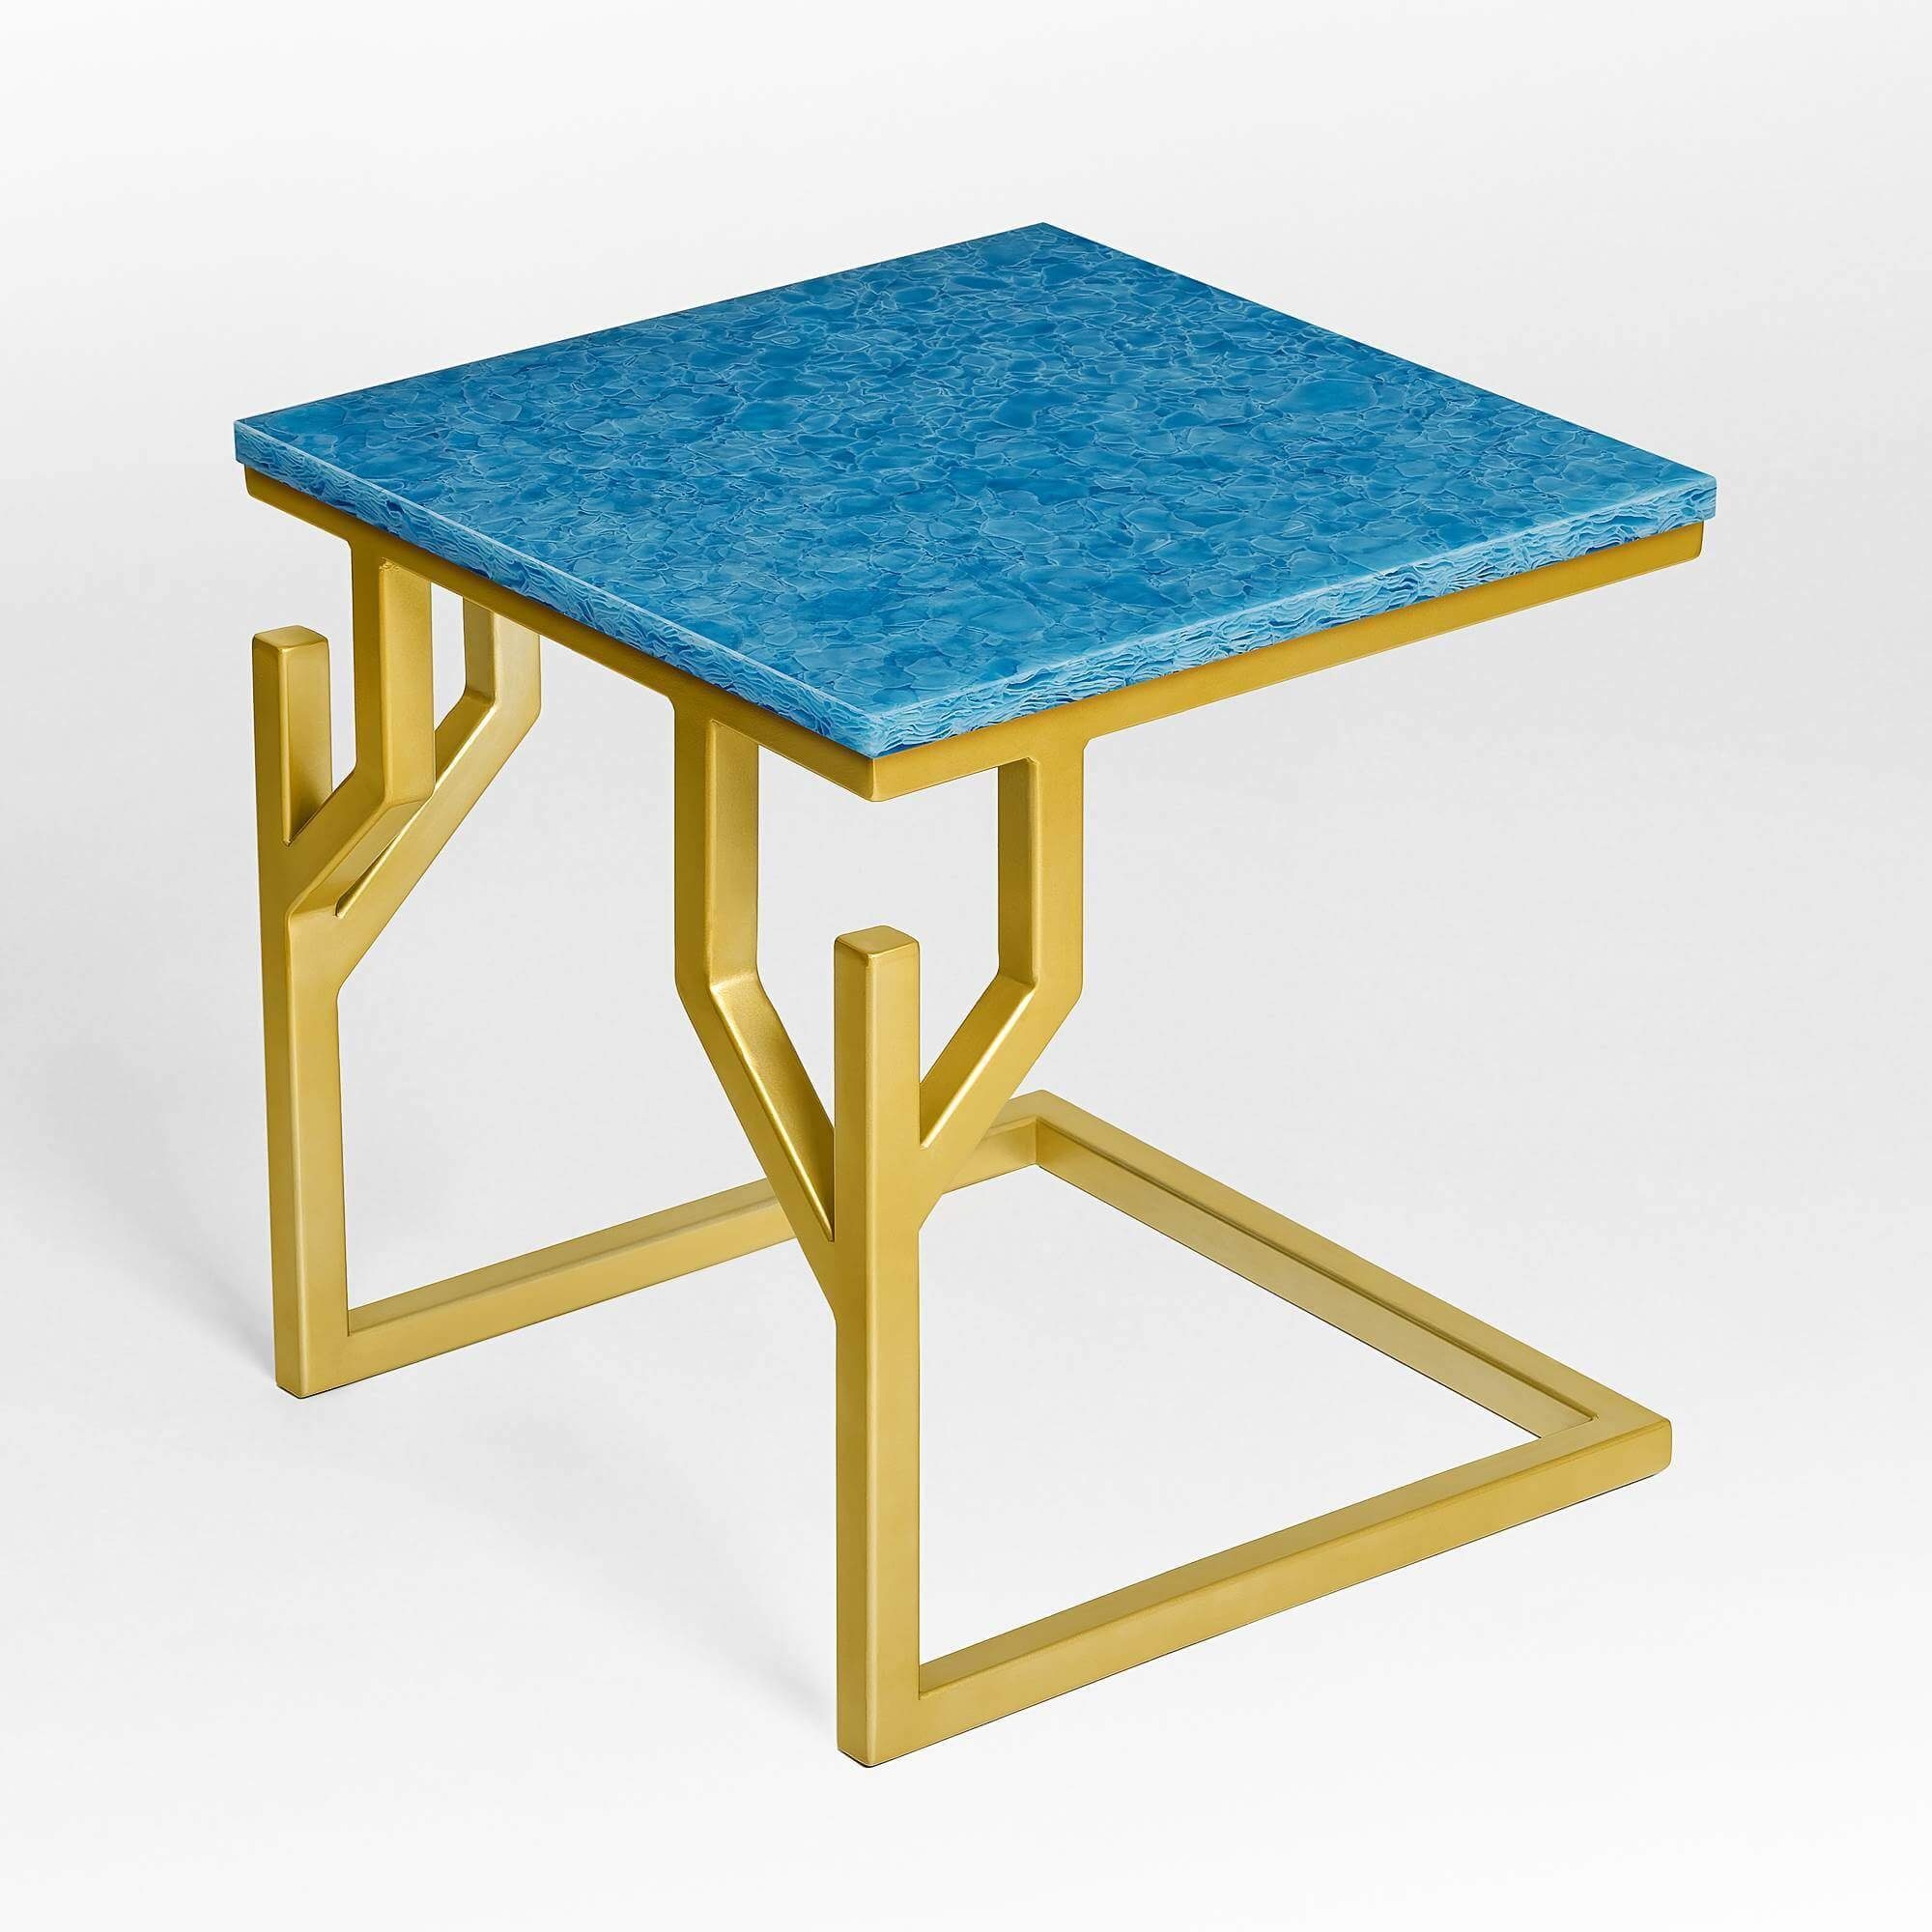 MAGNA Atelier Beistelltisch CORAL BAY mit GLASKERAMIK, Ablagetisch eckig, gold Metallgestell, 50x50x50cm Ocean Blue